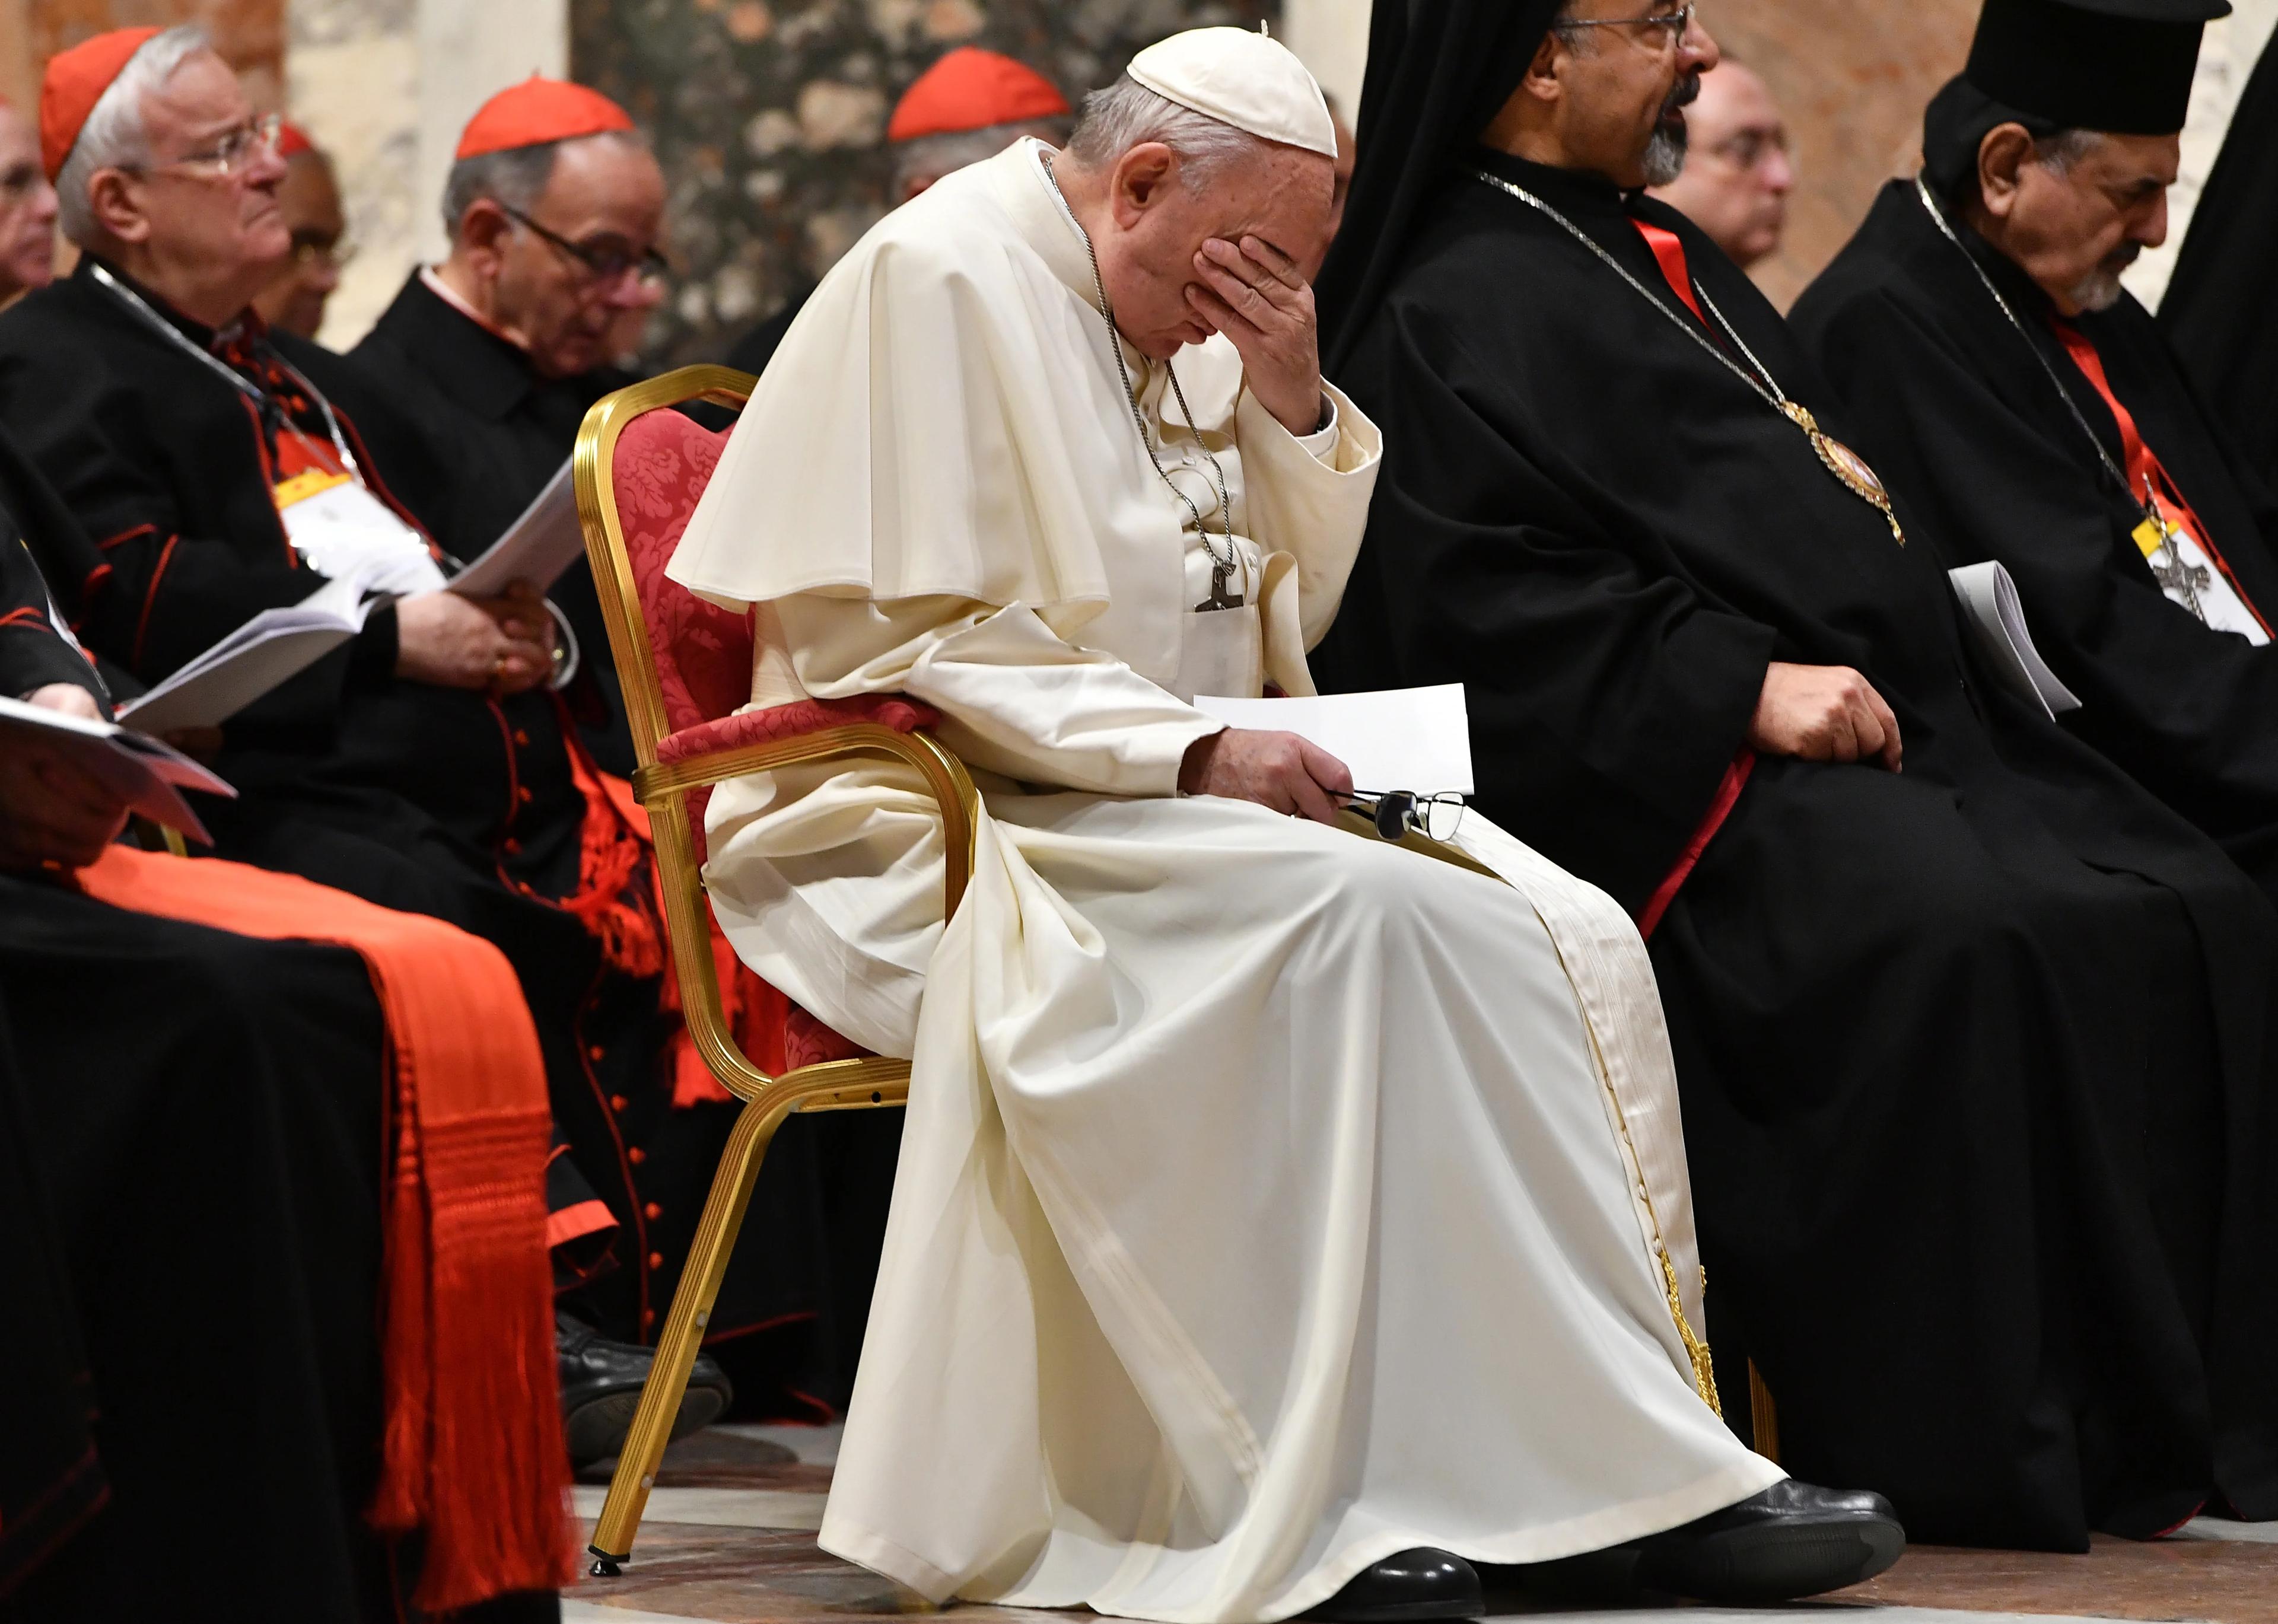 papież siedzi w otoczeniu biskupów, zasłaniając twarz rękoma